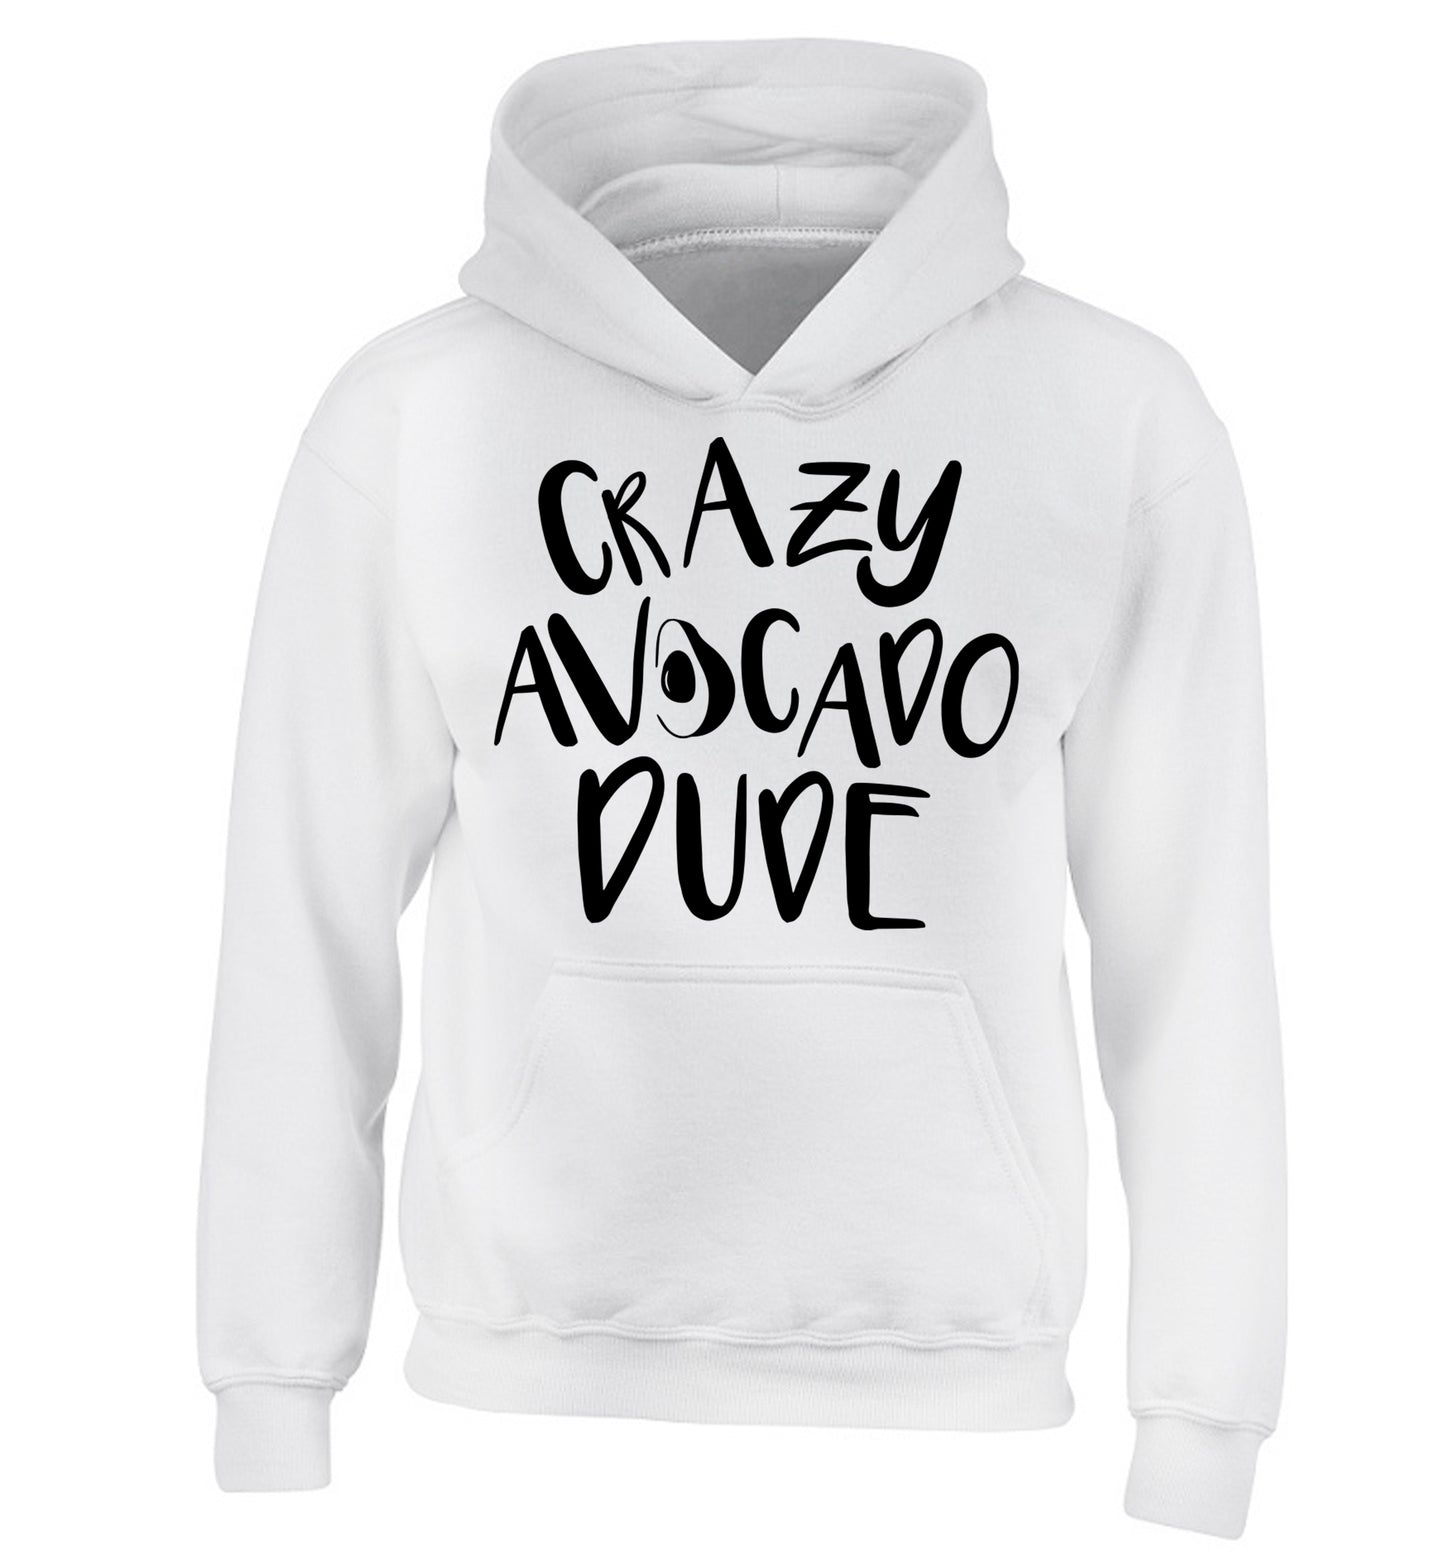 Crazy avocado dude children's white hoodie 12-14 Years